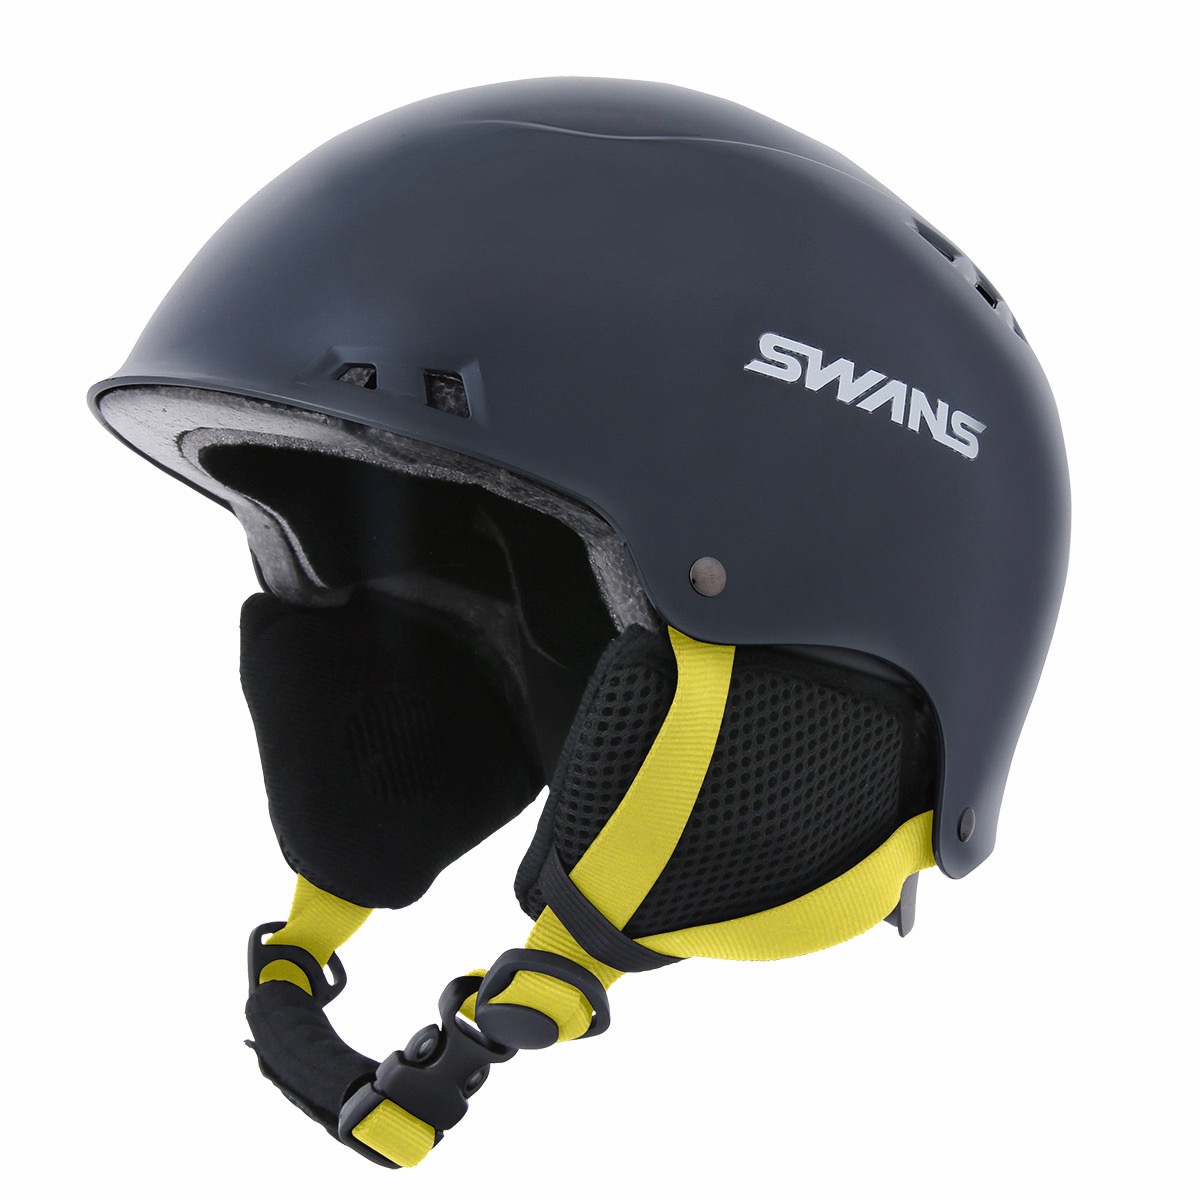 SWANS(スワンズ) H-46R ヘルメット 子供用 ジュニア スキー 